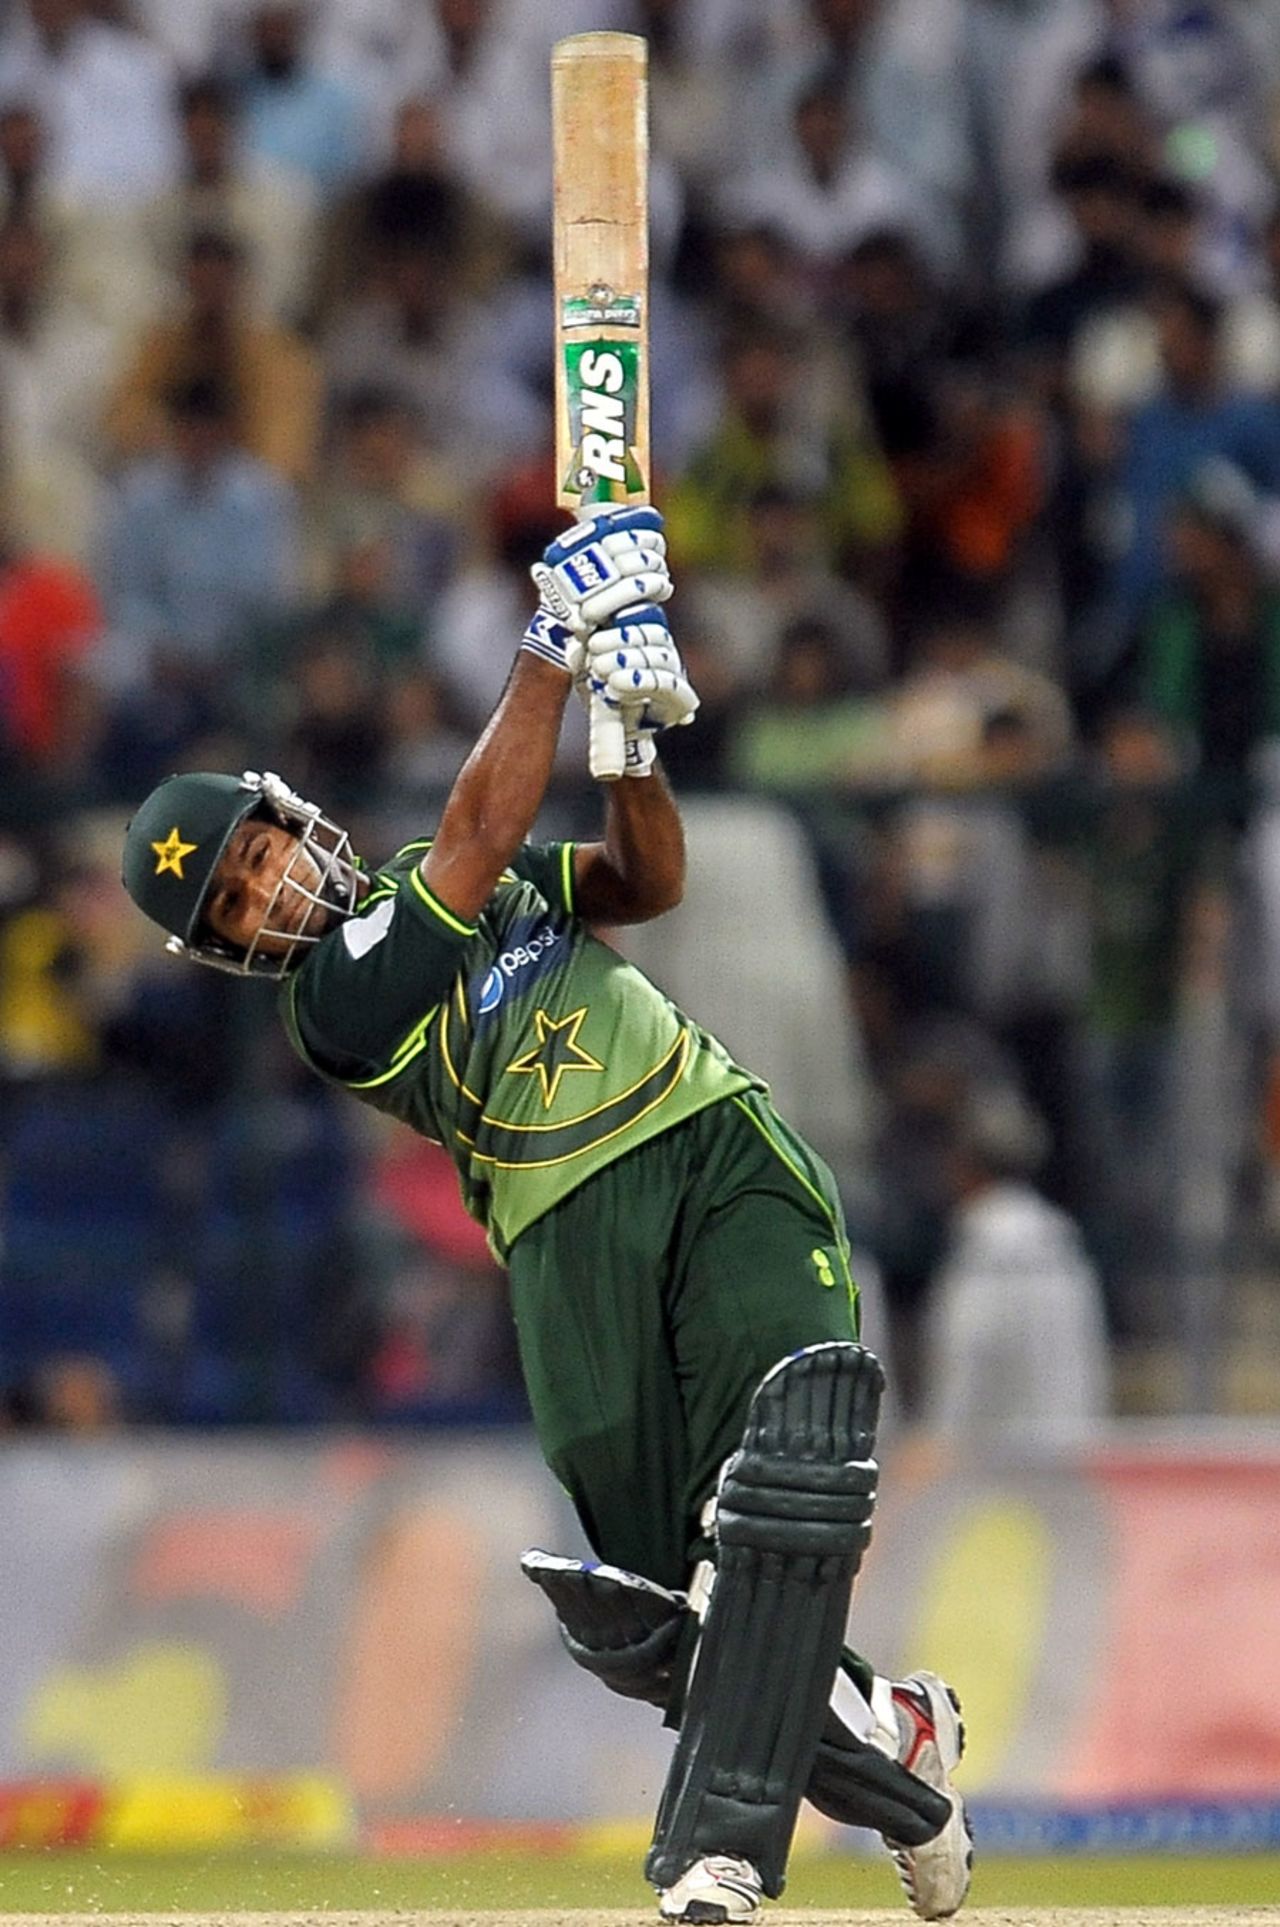 Asad Shafiq launches one down the ground, Pakistan v Sri Lanka, Only T20I, Abu Dhabi, November 25, 2011 